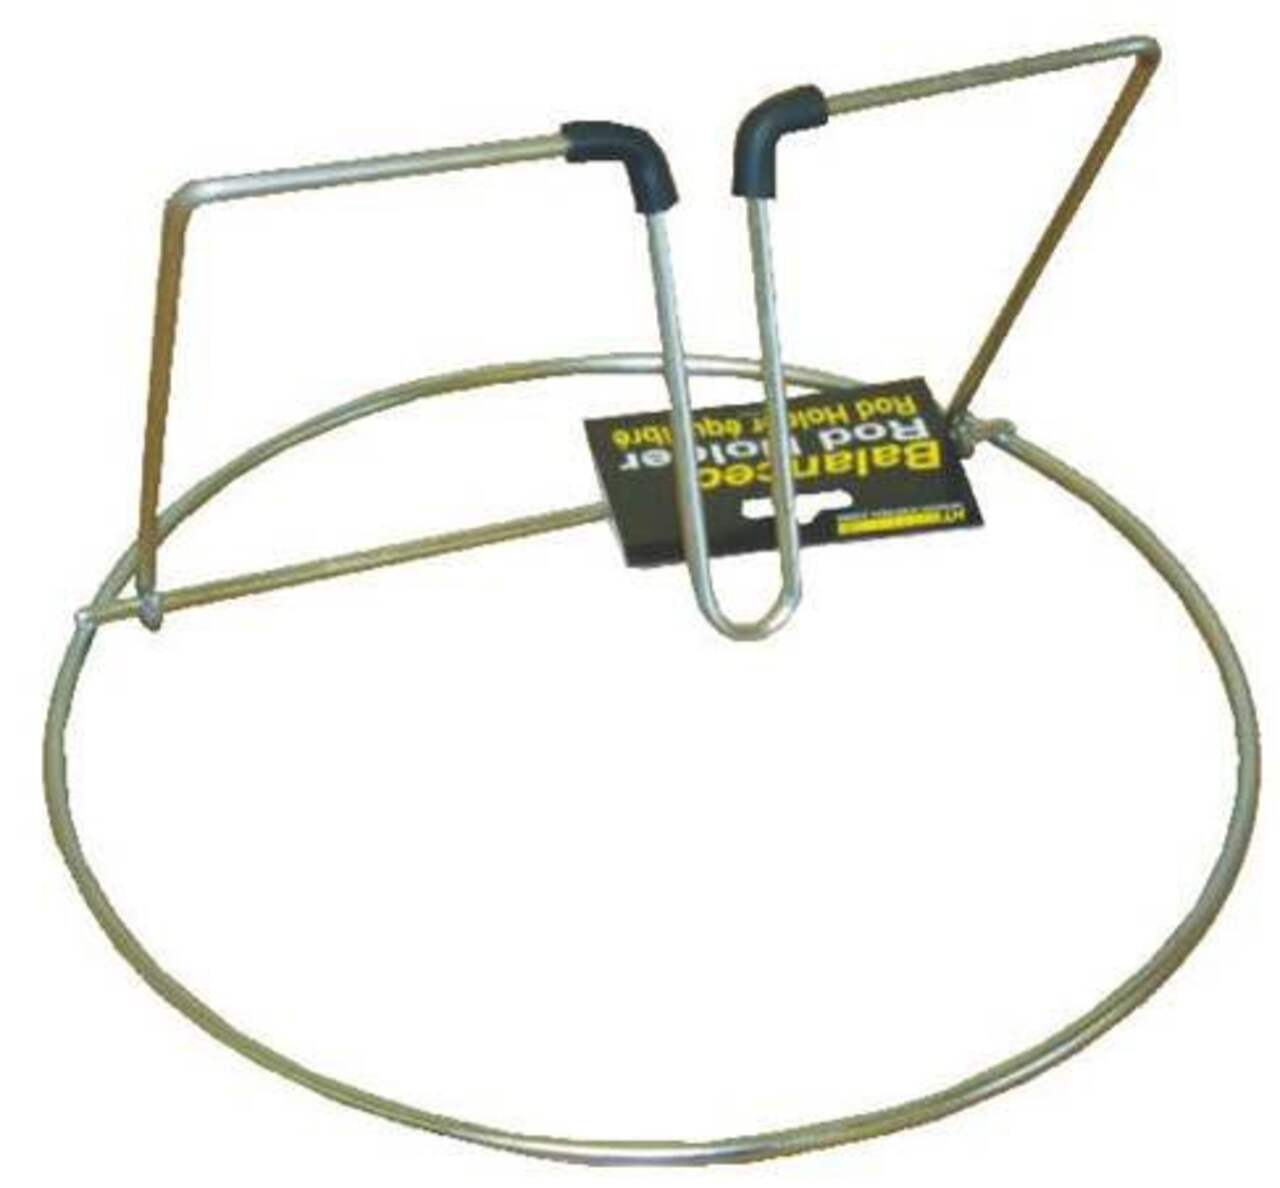 Game pole rod holder - adjustable mount